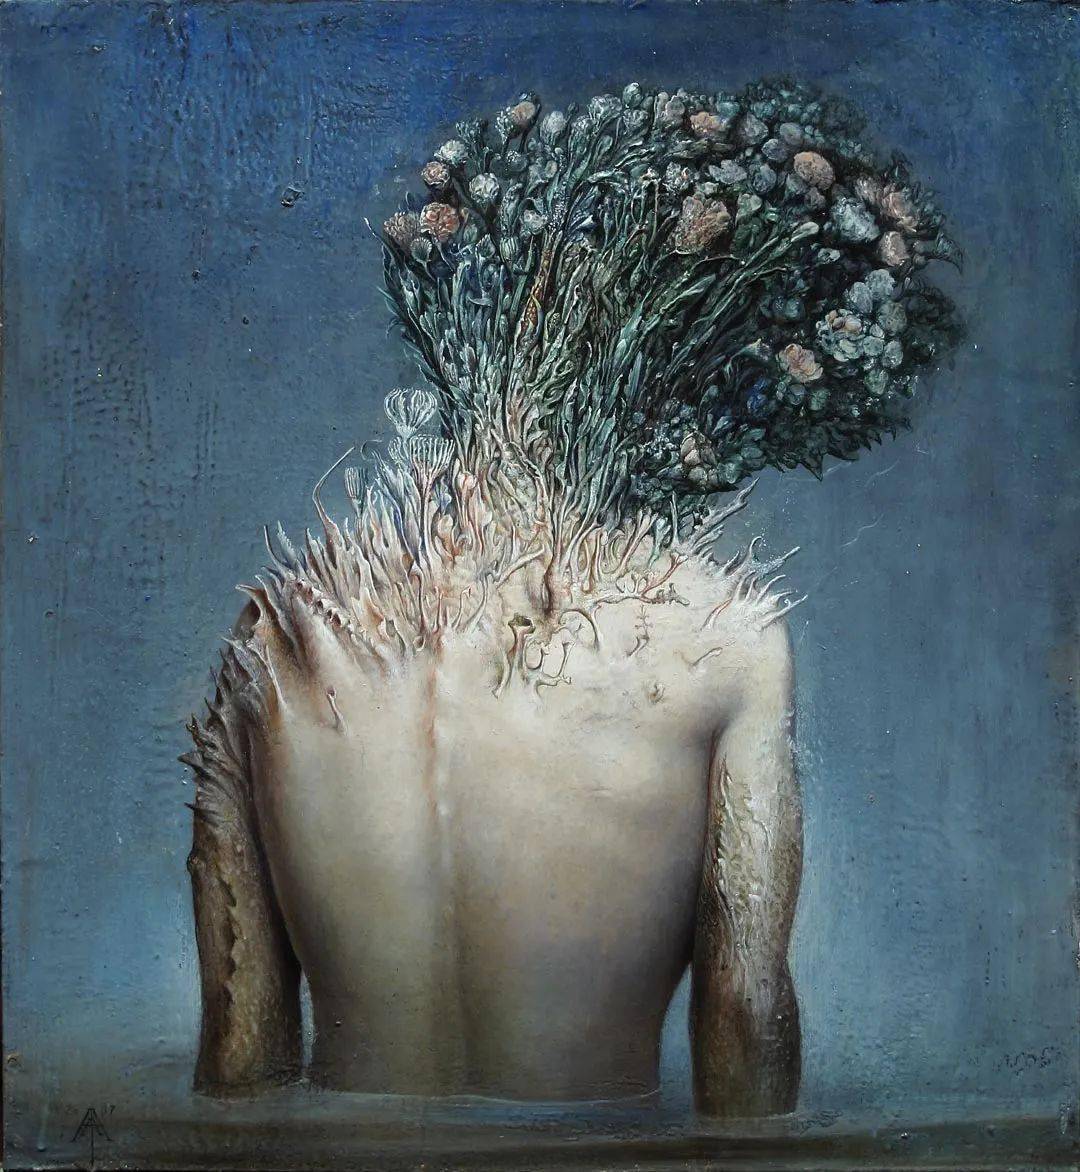 意大利画家阿戈斯蒂诺·阿里亚贝内奇异而非凡的超现实主义人体油画